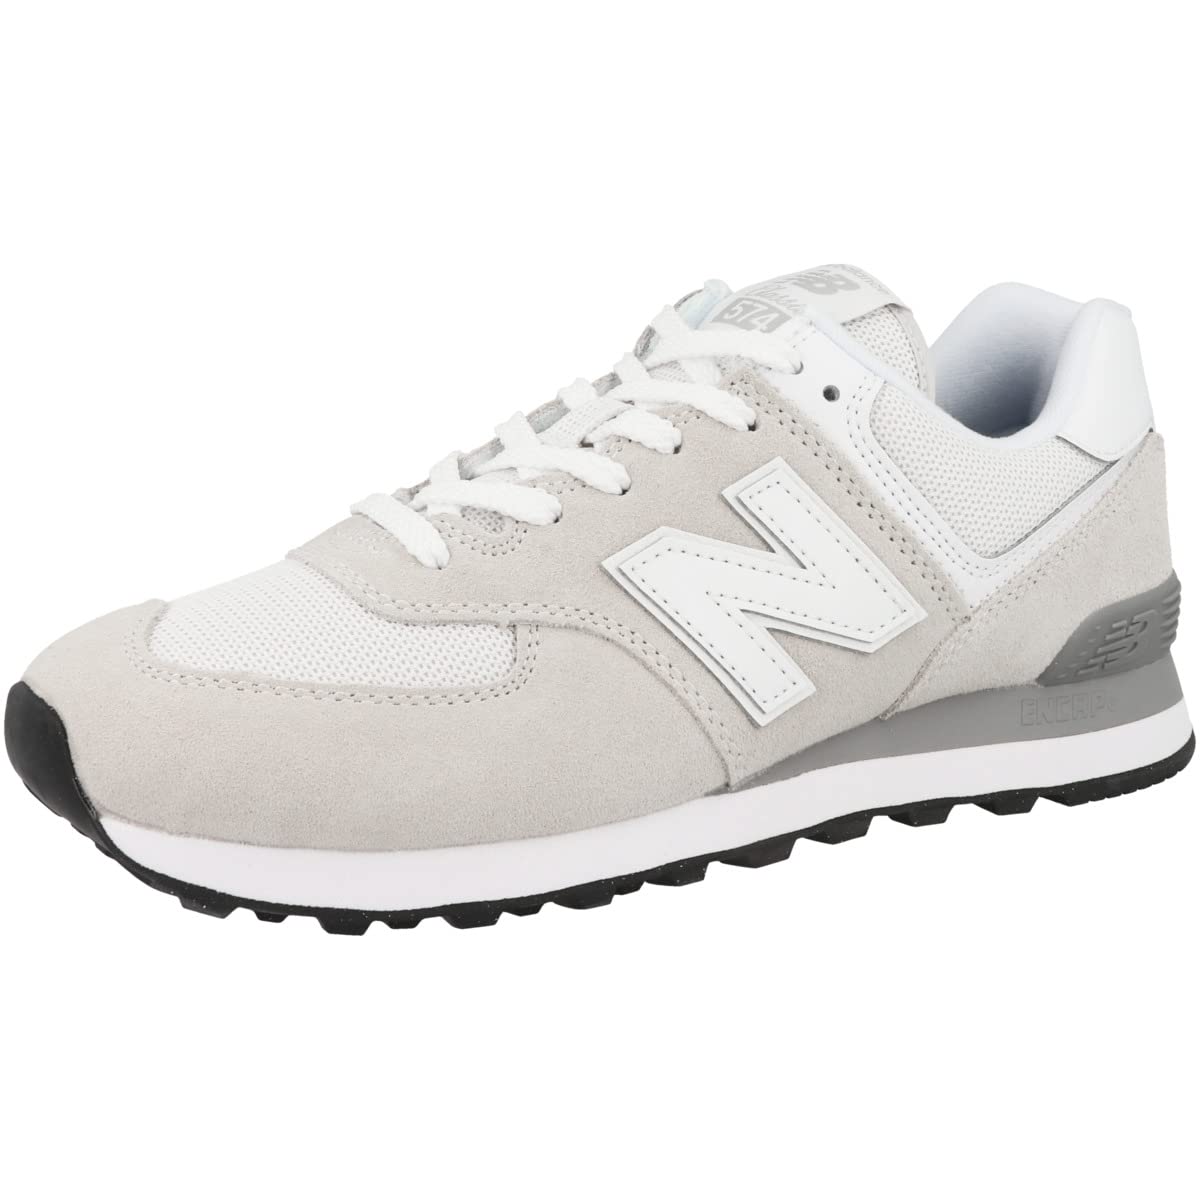 New Balance 574 Men's Walking Shoes,11 UK